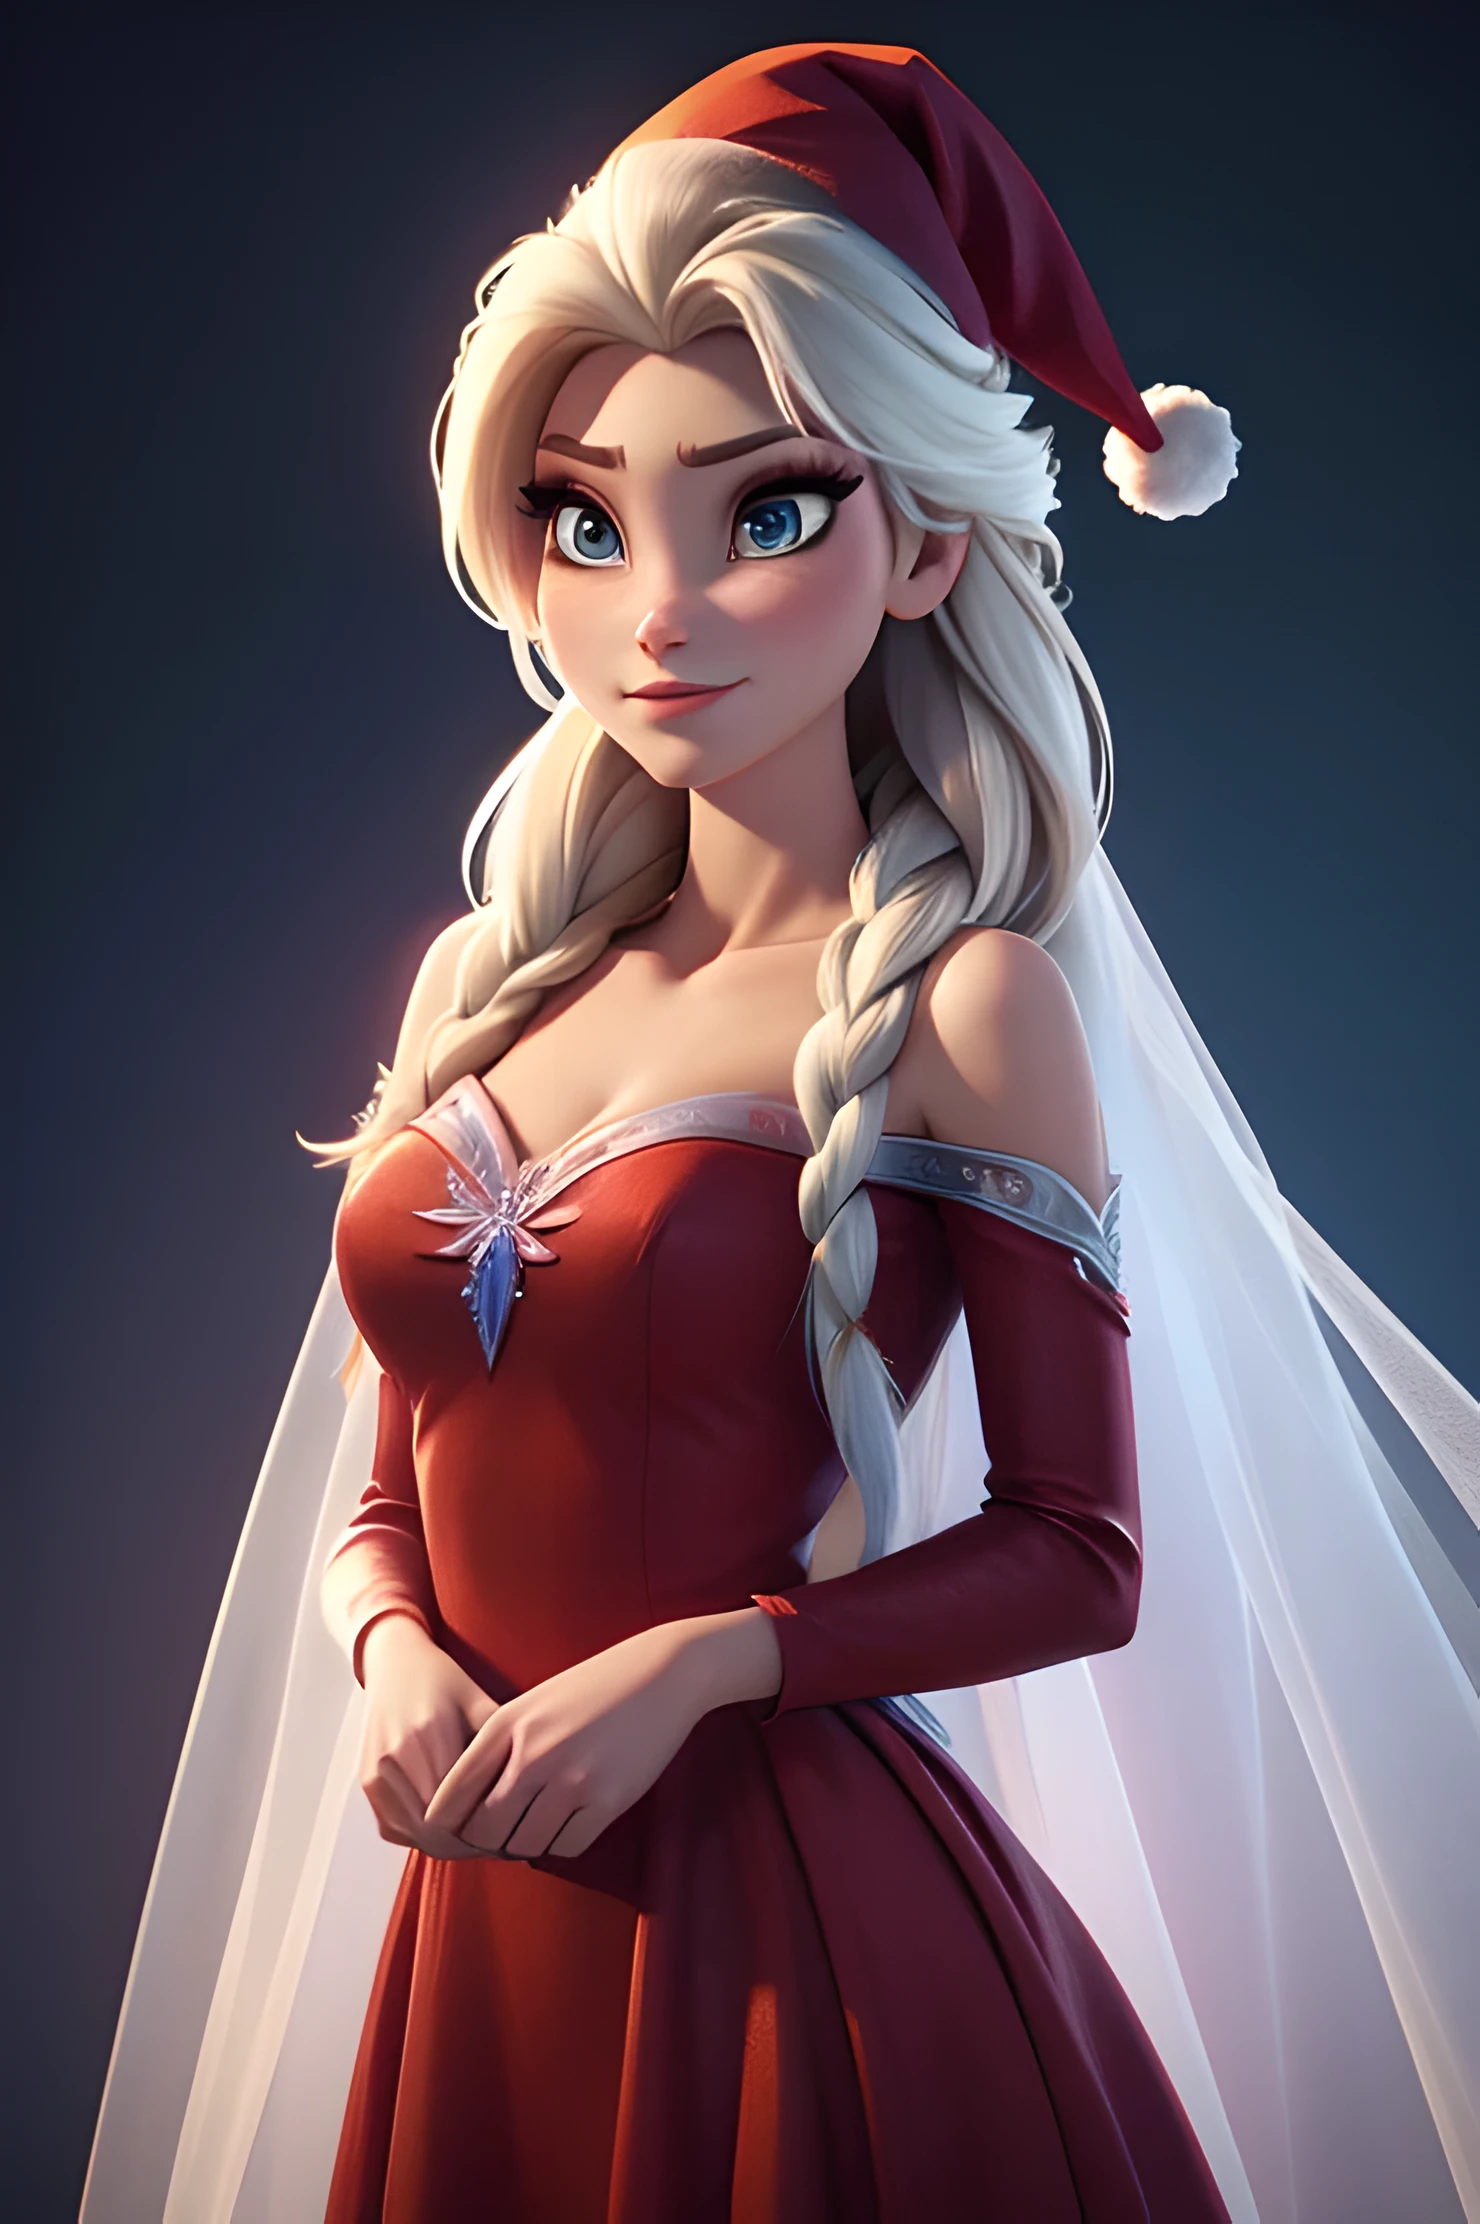 สร้างภาพเอลซ่าจากเรื่อง Frozen ที่สมจริง, ตัวละครจริง โฟรเซ่น เอลซ่า, แต่งกายด้วยแฟชั่นทันสมัยรับปีใหม่ . ชุดพื้นผิว HDR 8K, การเรนเดอร์ภาพ Elsa, เอลซ่าควรสวมชุดสีแดง, ชุดเดรสยาวที่ละเอียดอ่อน , พร้อมกับหมวกซานต้าปีใหม่. การแต่งกายควรมีสไตล์และเหมาะสมกับเจ้าหญิง. ชุดปีใหม่ด้วยขนนกและพู่จริง